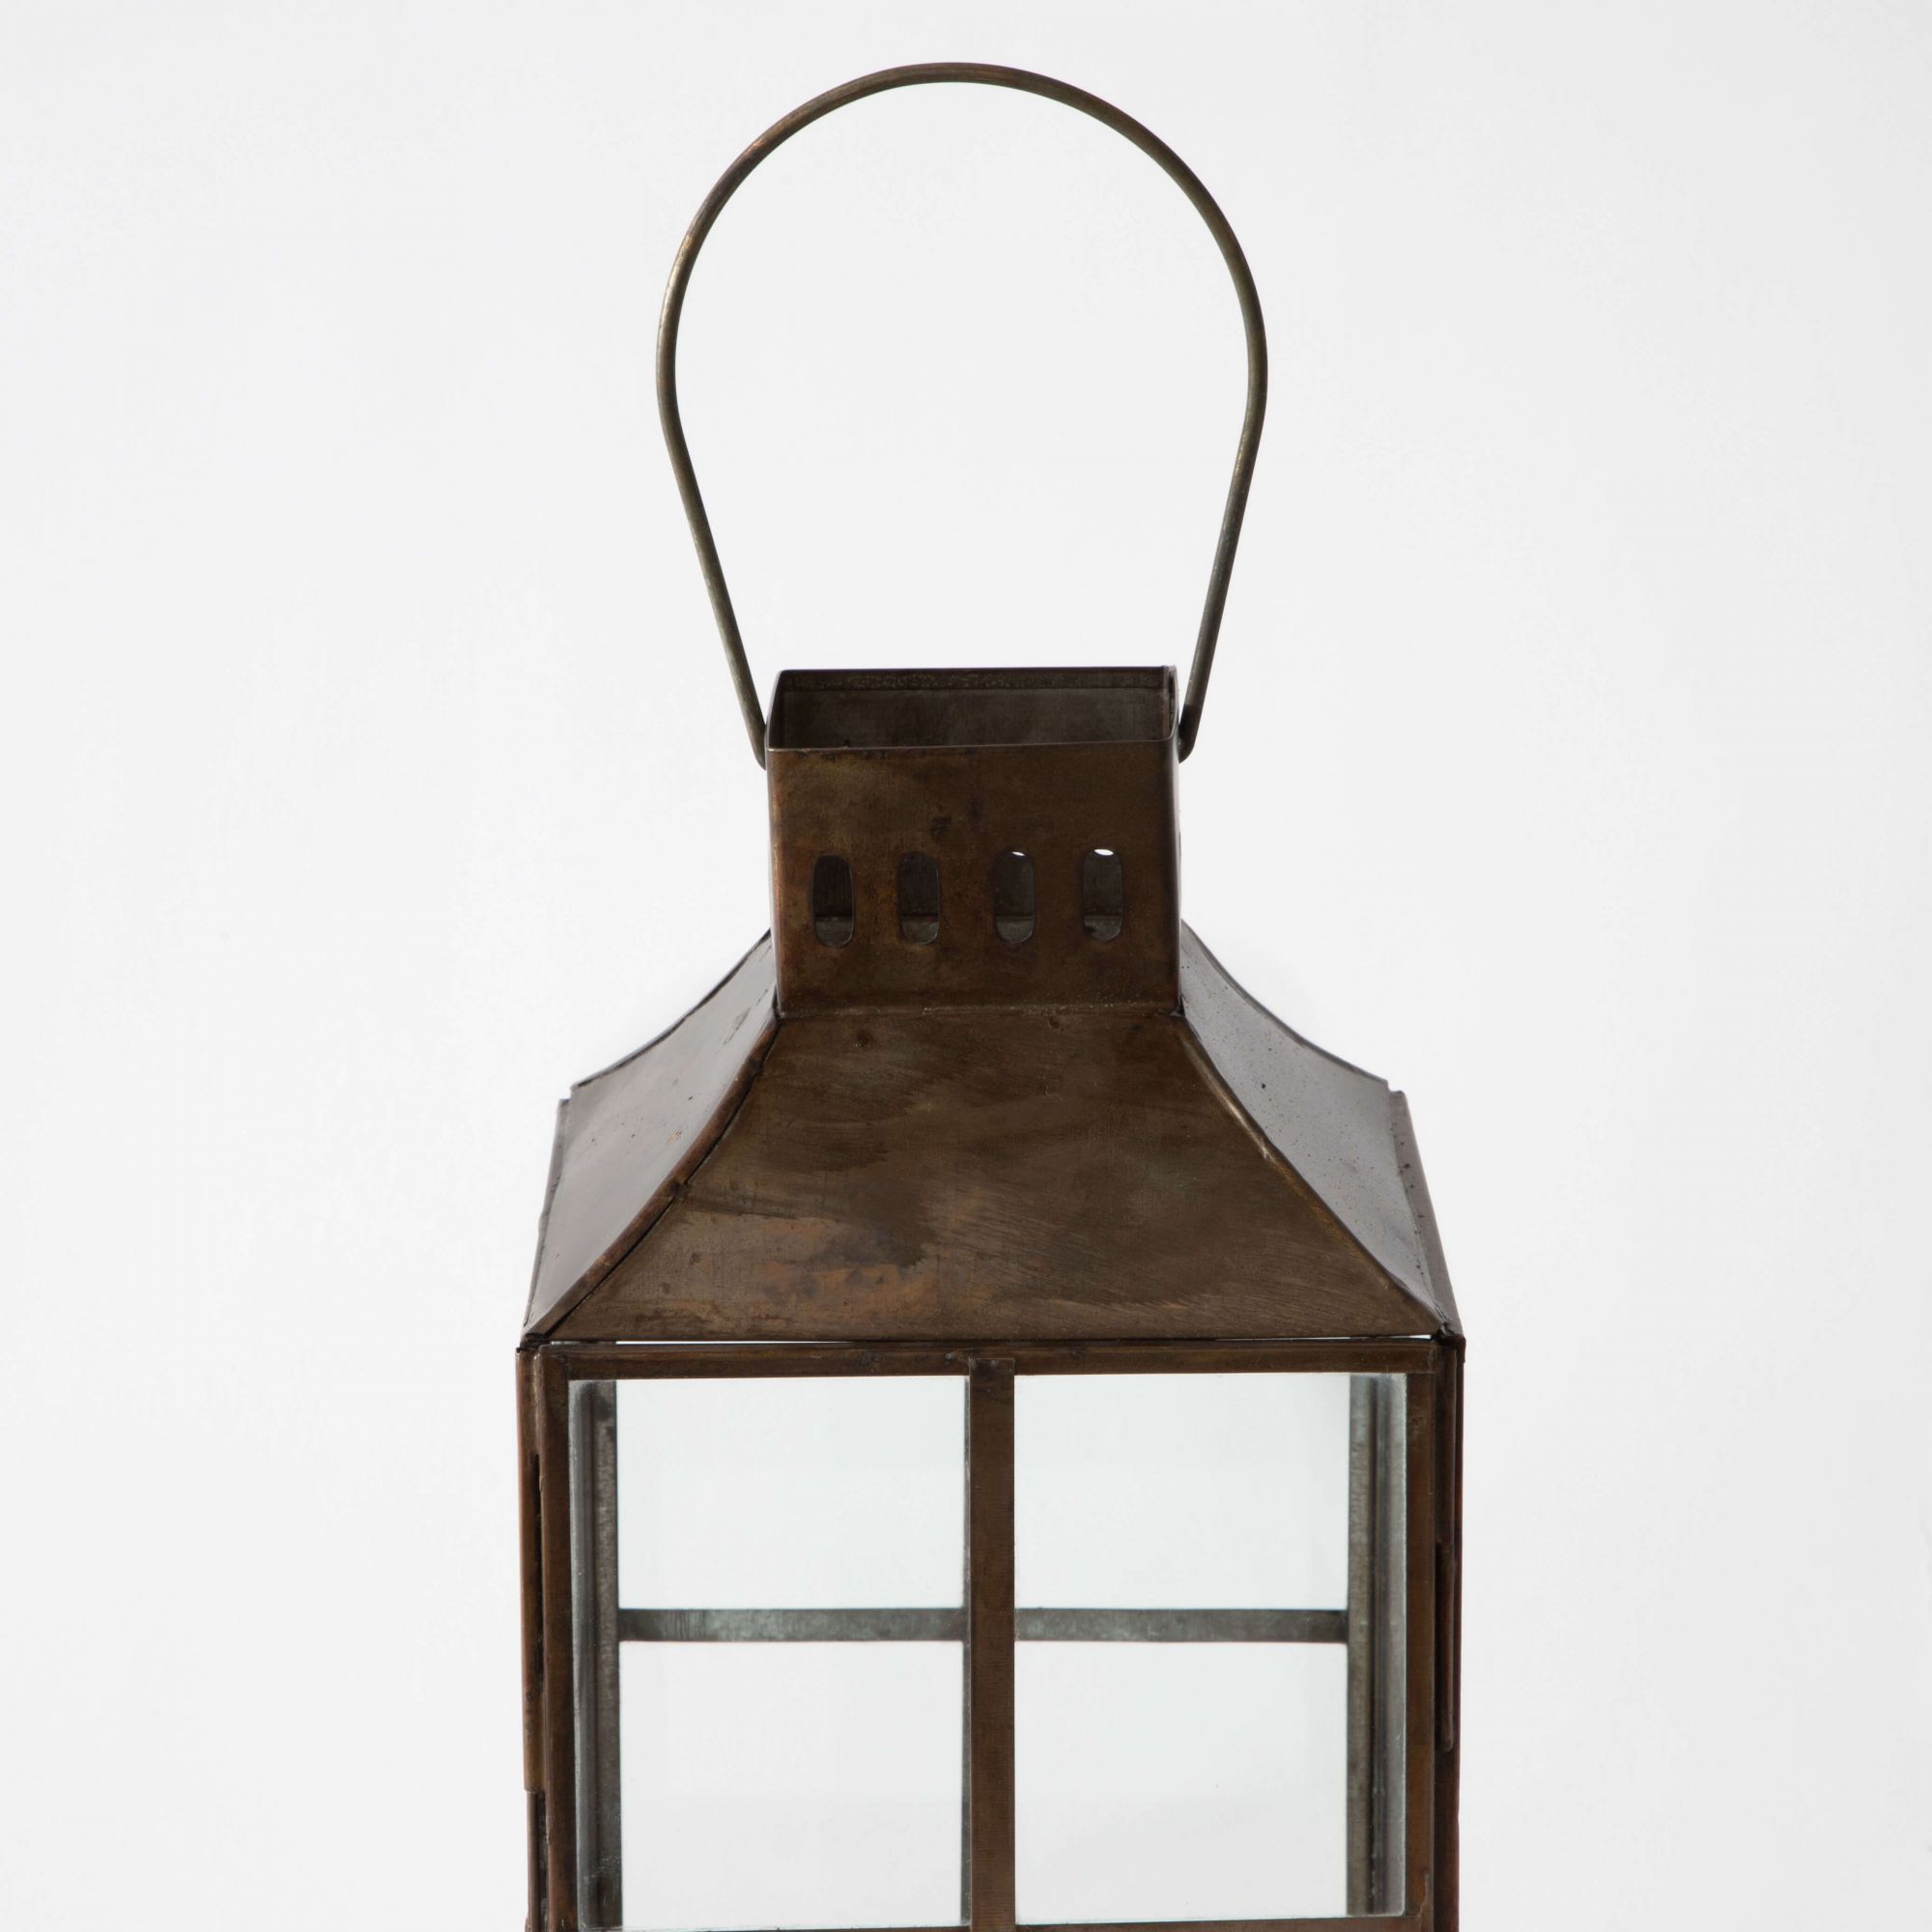 Maison Lighthouse Candle Lantern - Aged Antique Finish